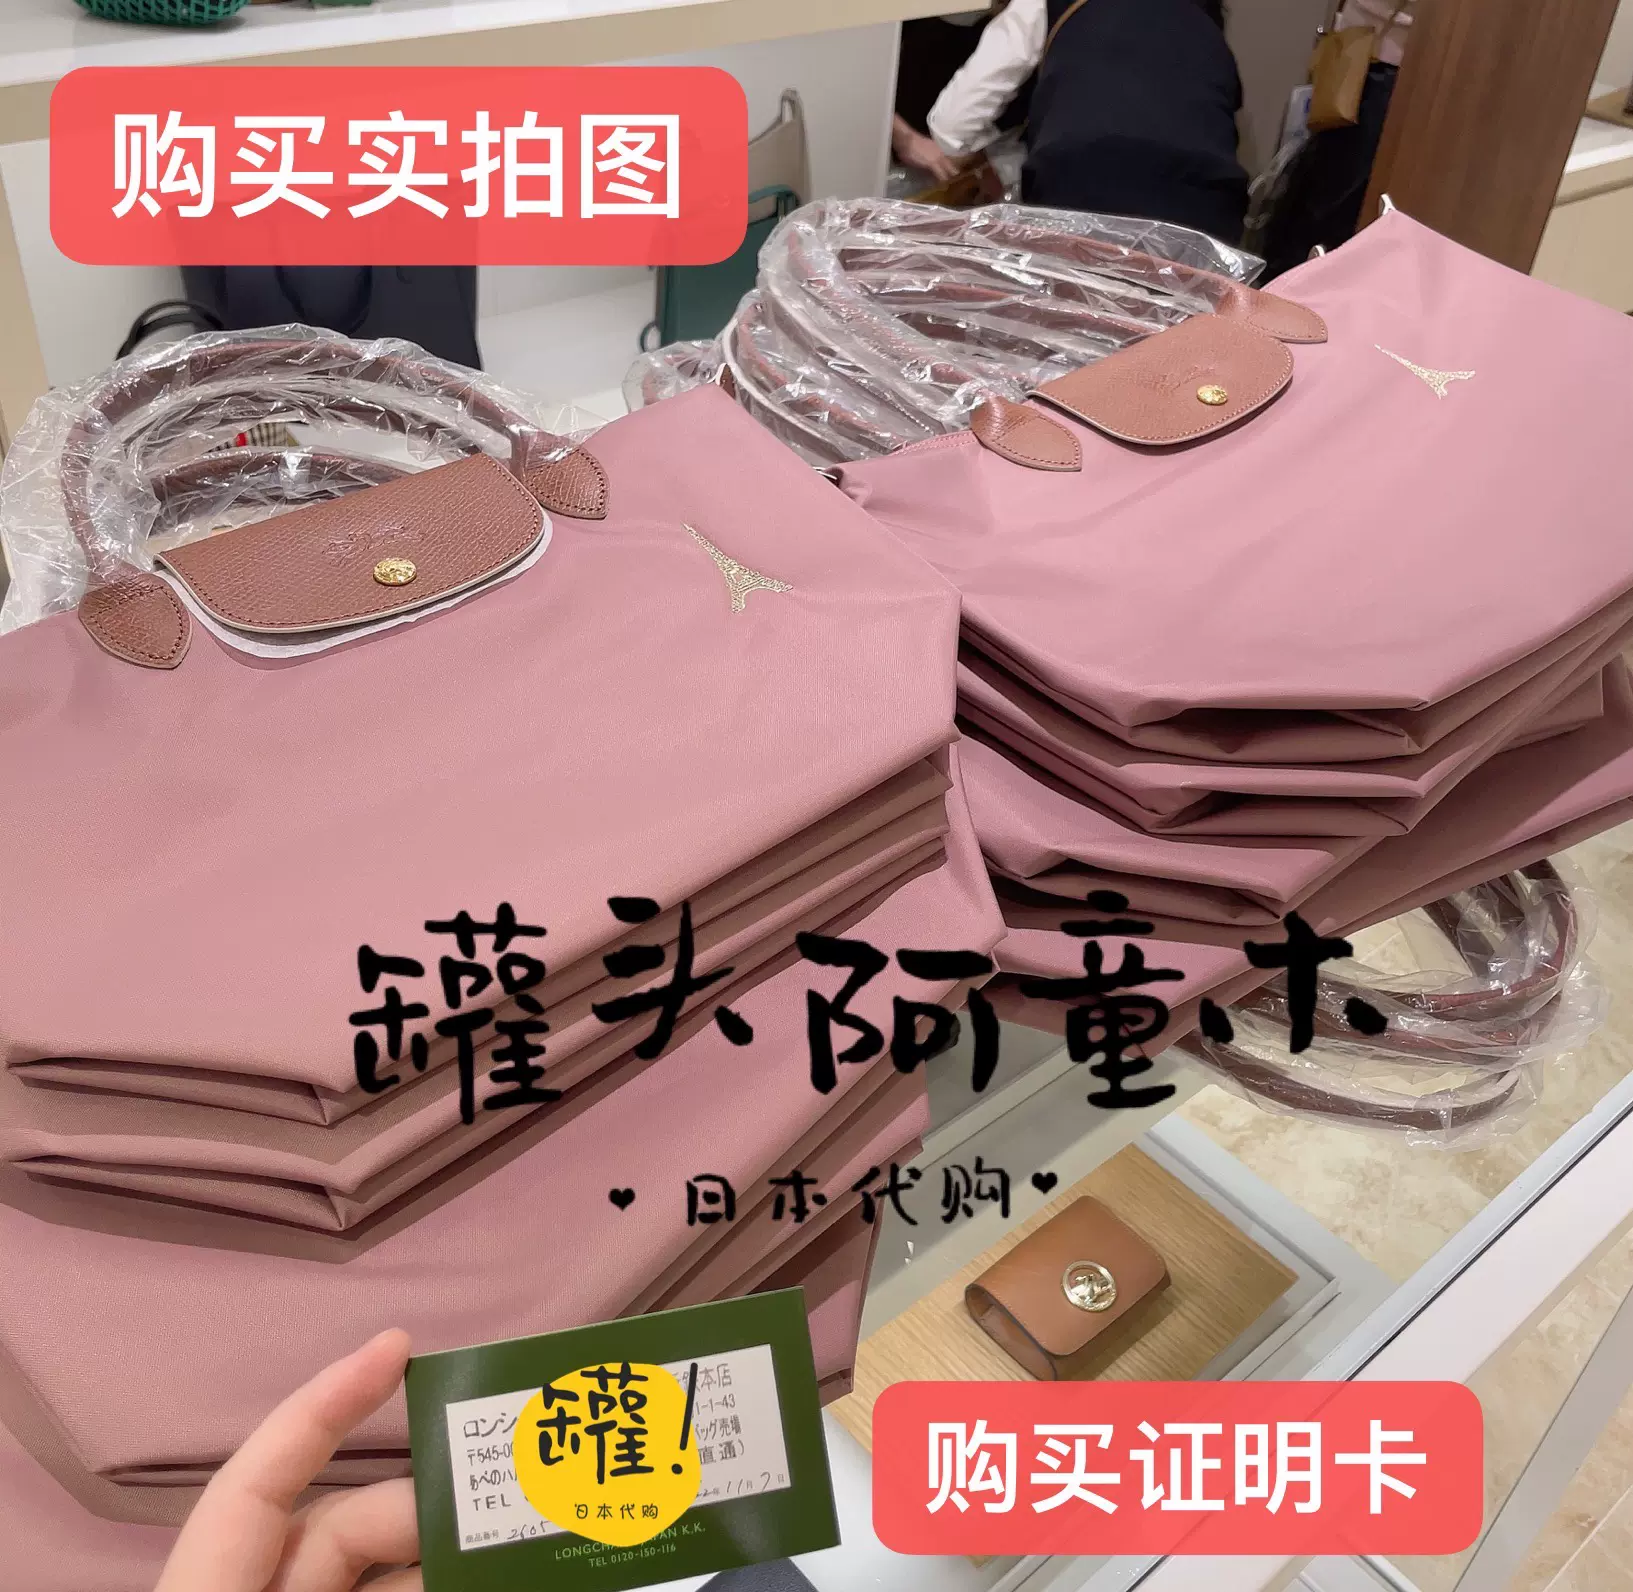 日本代购 longchamp珑骧日本限定胭脂粉橡皮粉色 铁塔刺绣 托特包-Taobao